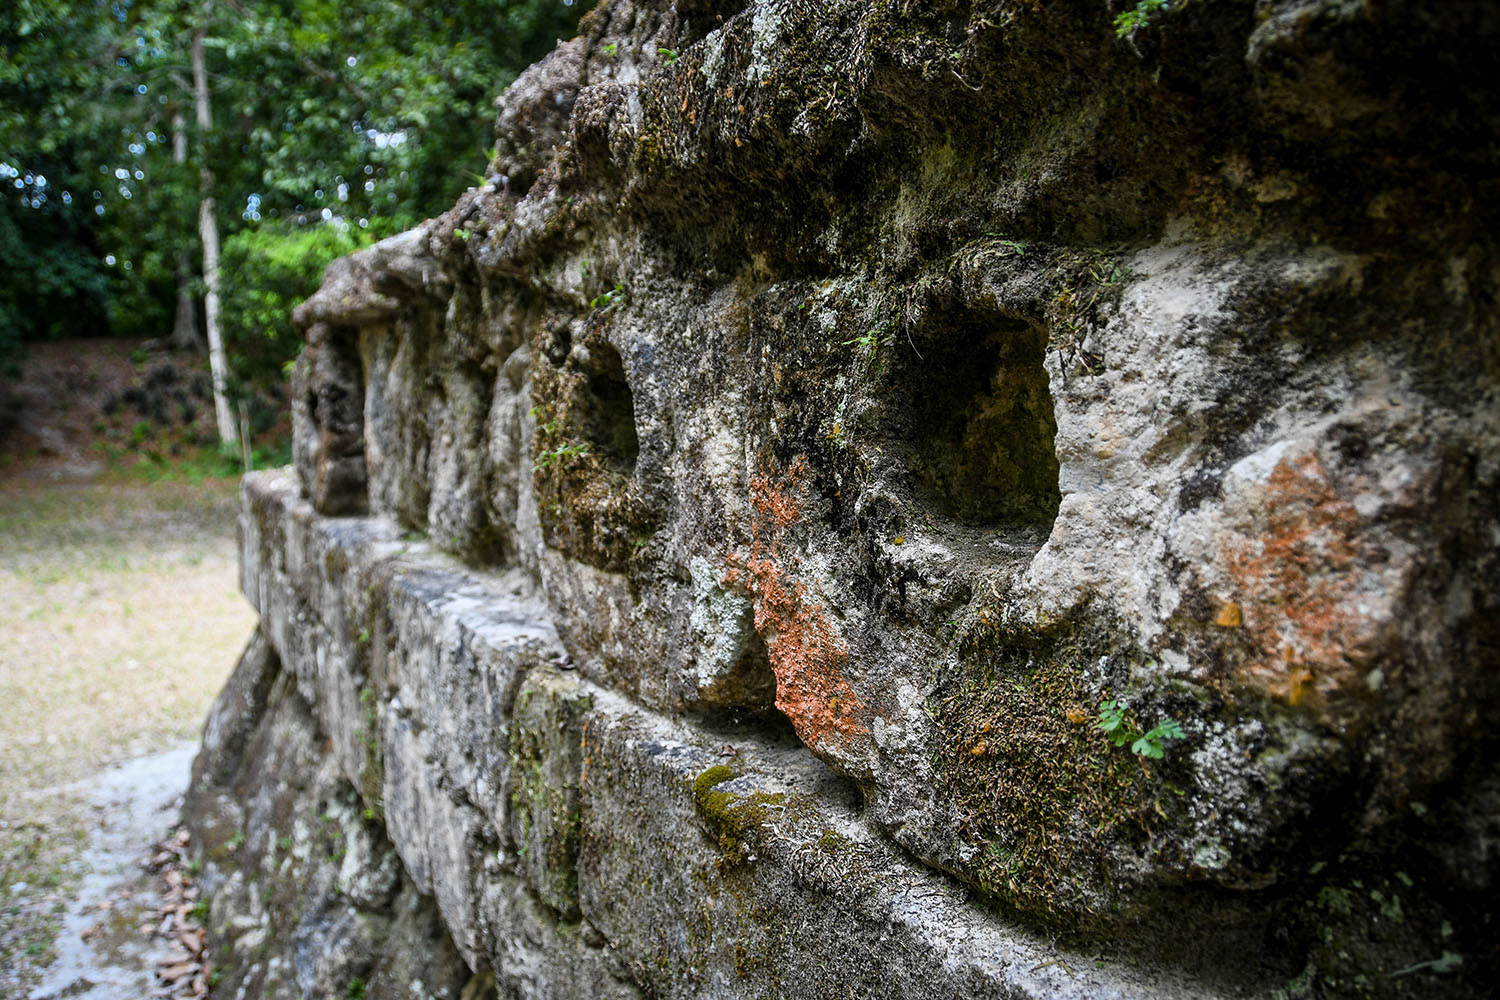 Visit Tikal Guatemala Ancient Ruins